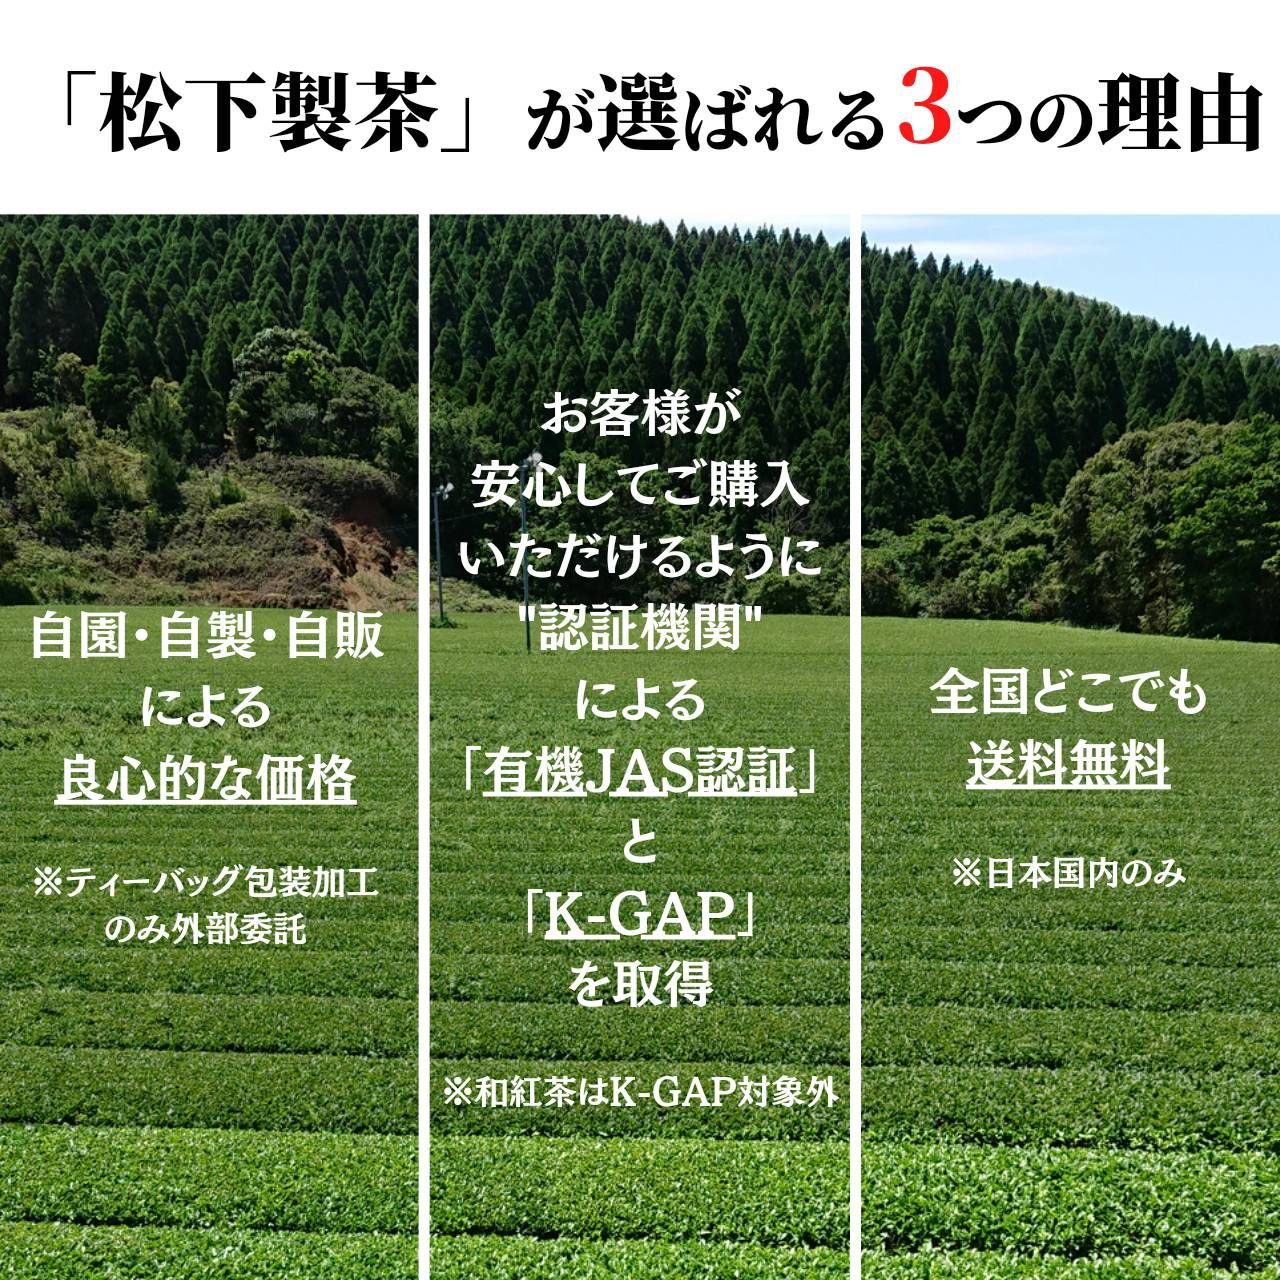 【2022年産】種子島の有機緑茶『やぶきた』 茶葉(リーフ) 100g 松下製茶-2